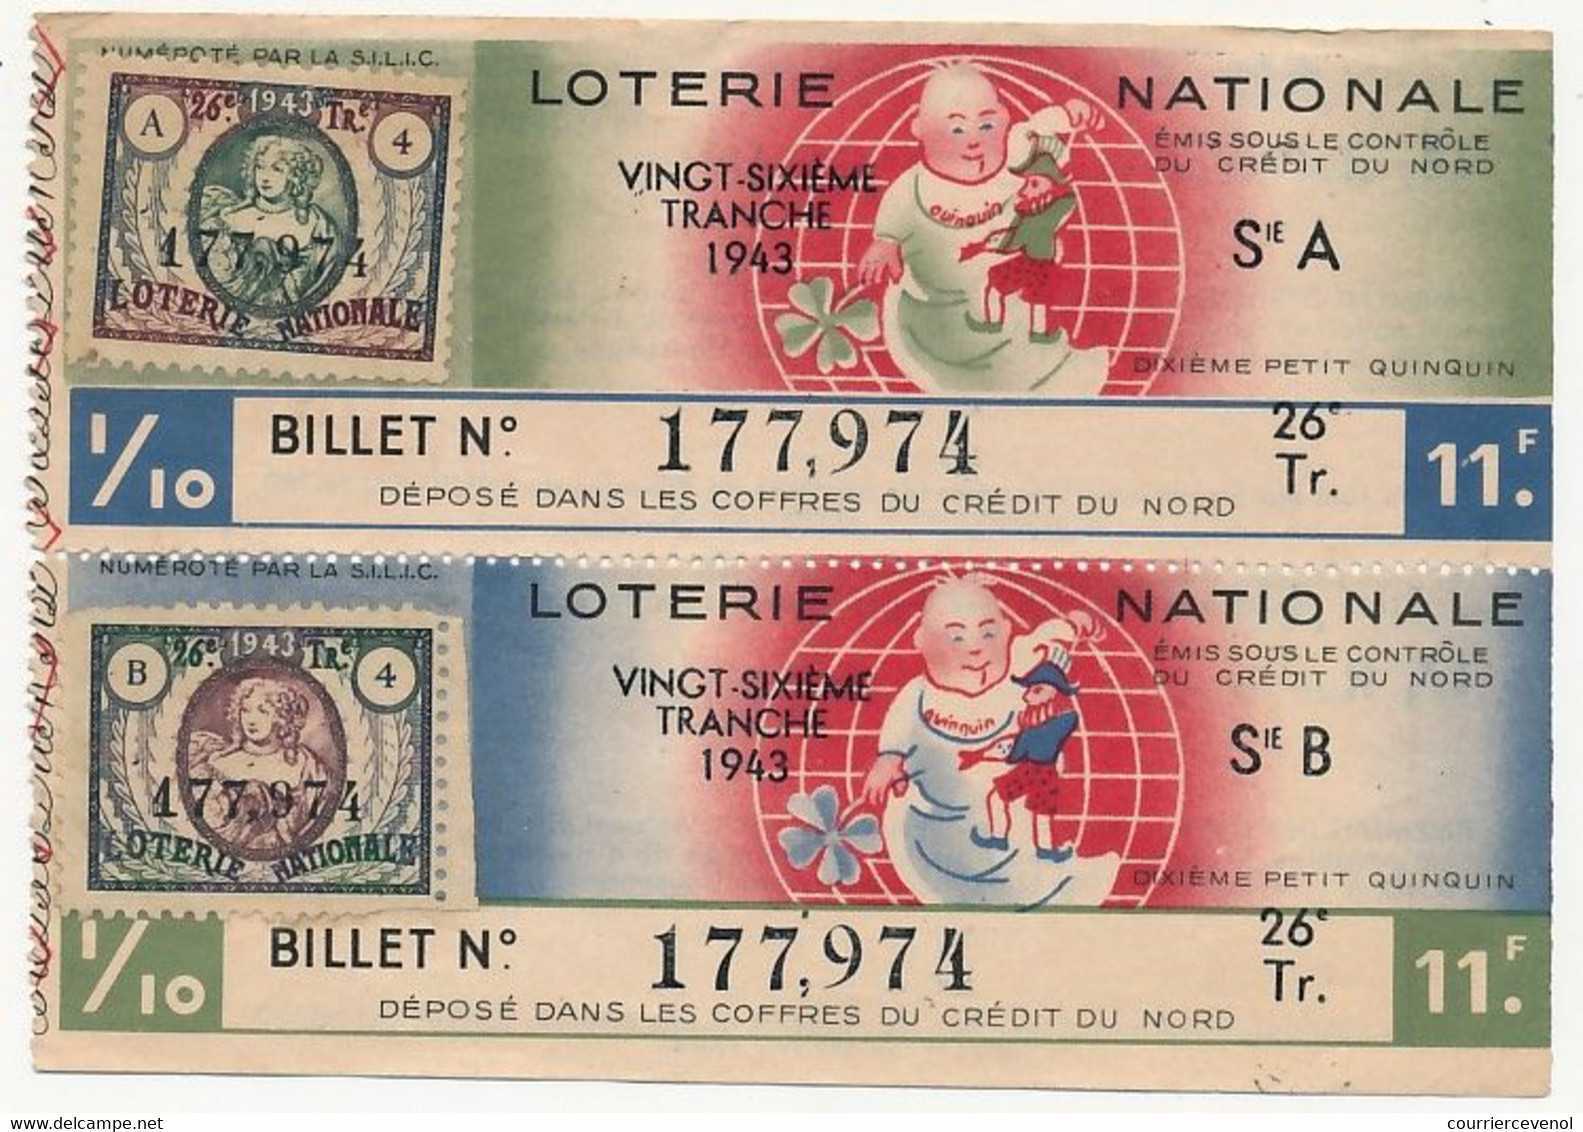 FRANCE - Loterie Nationale - 1/10ème A Et B - Crédit Du Nord - Dixième Petit Quiquin - 26eme Tranche 1943 - Lottery Tickets